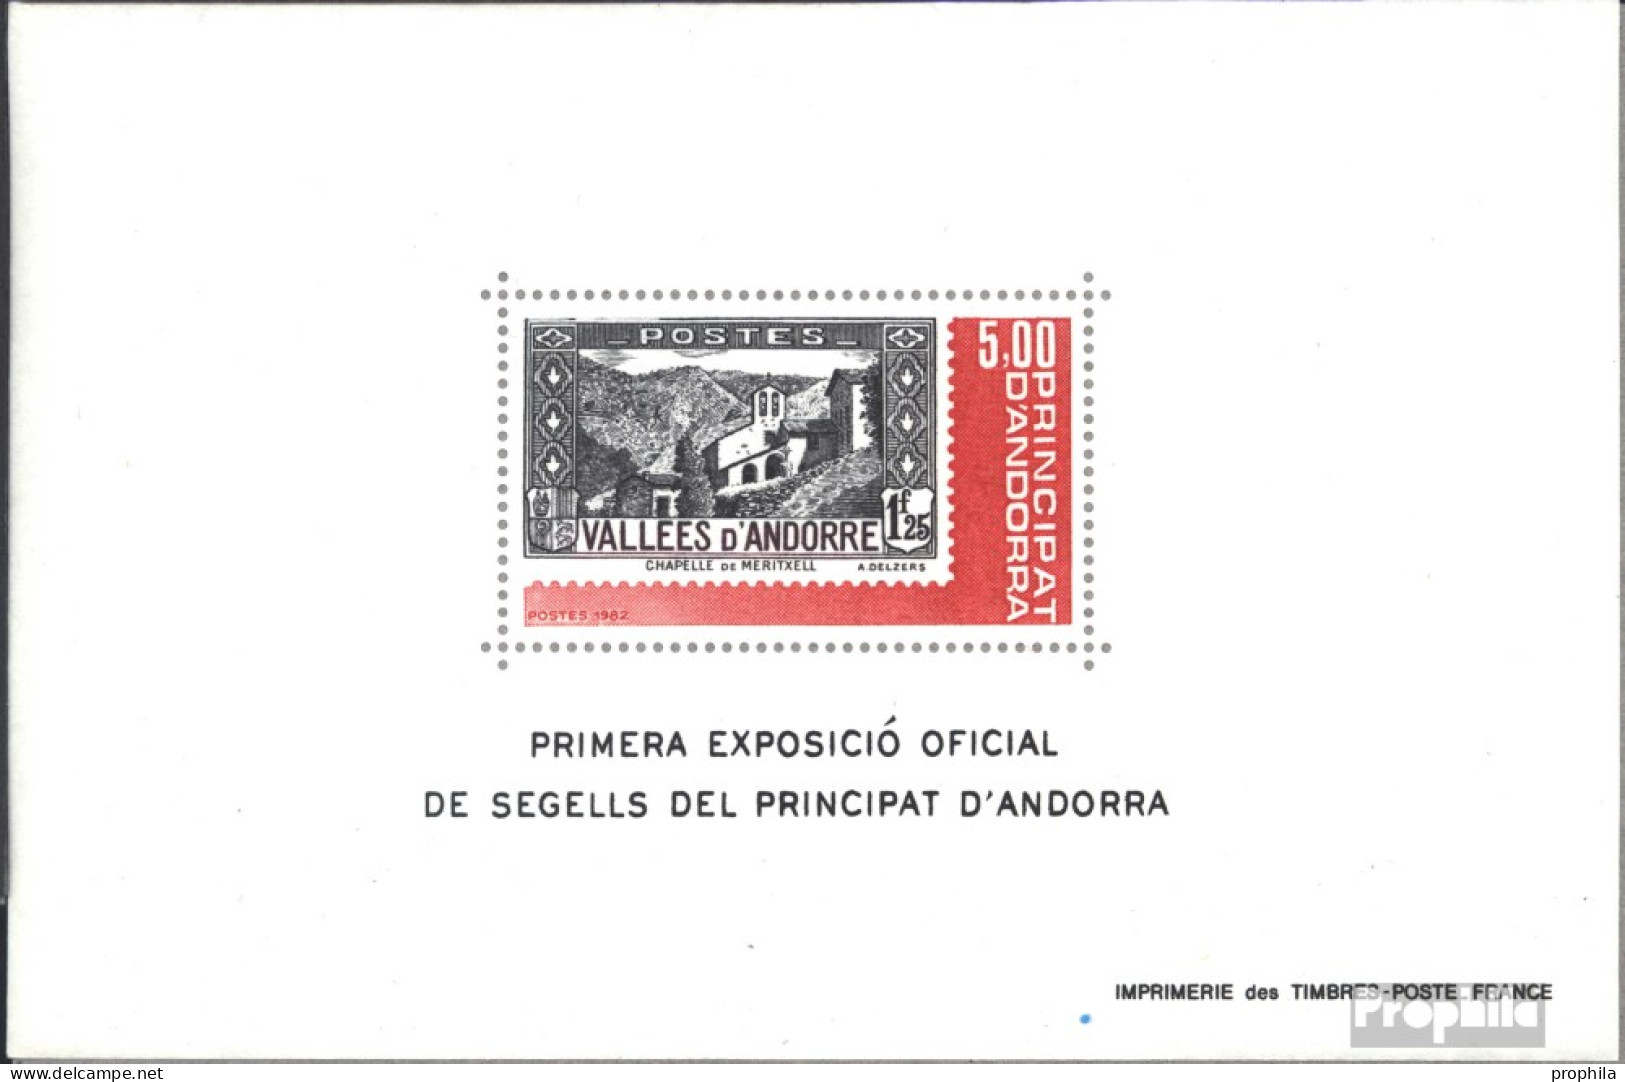 Andorra - Französische Post Block1 (kompl.Ausg.) Postfrisch 1982 Briefmarkenausstellung - Carnets